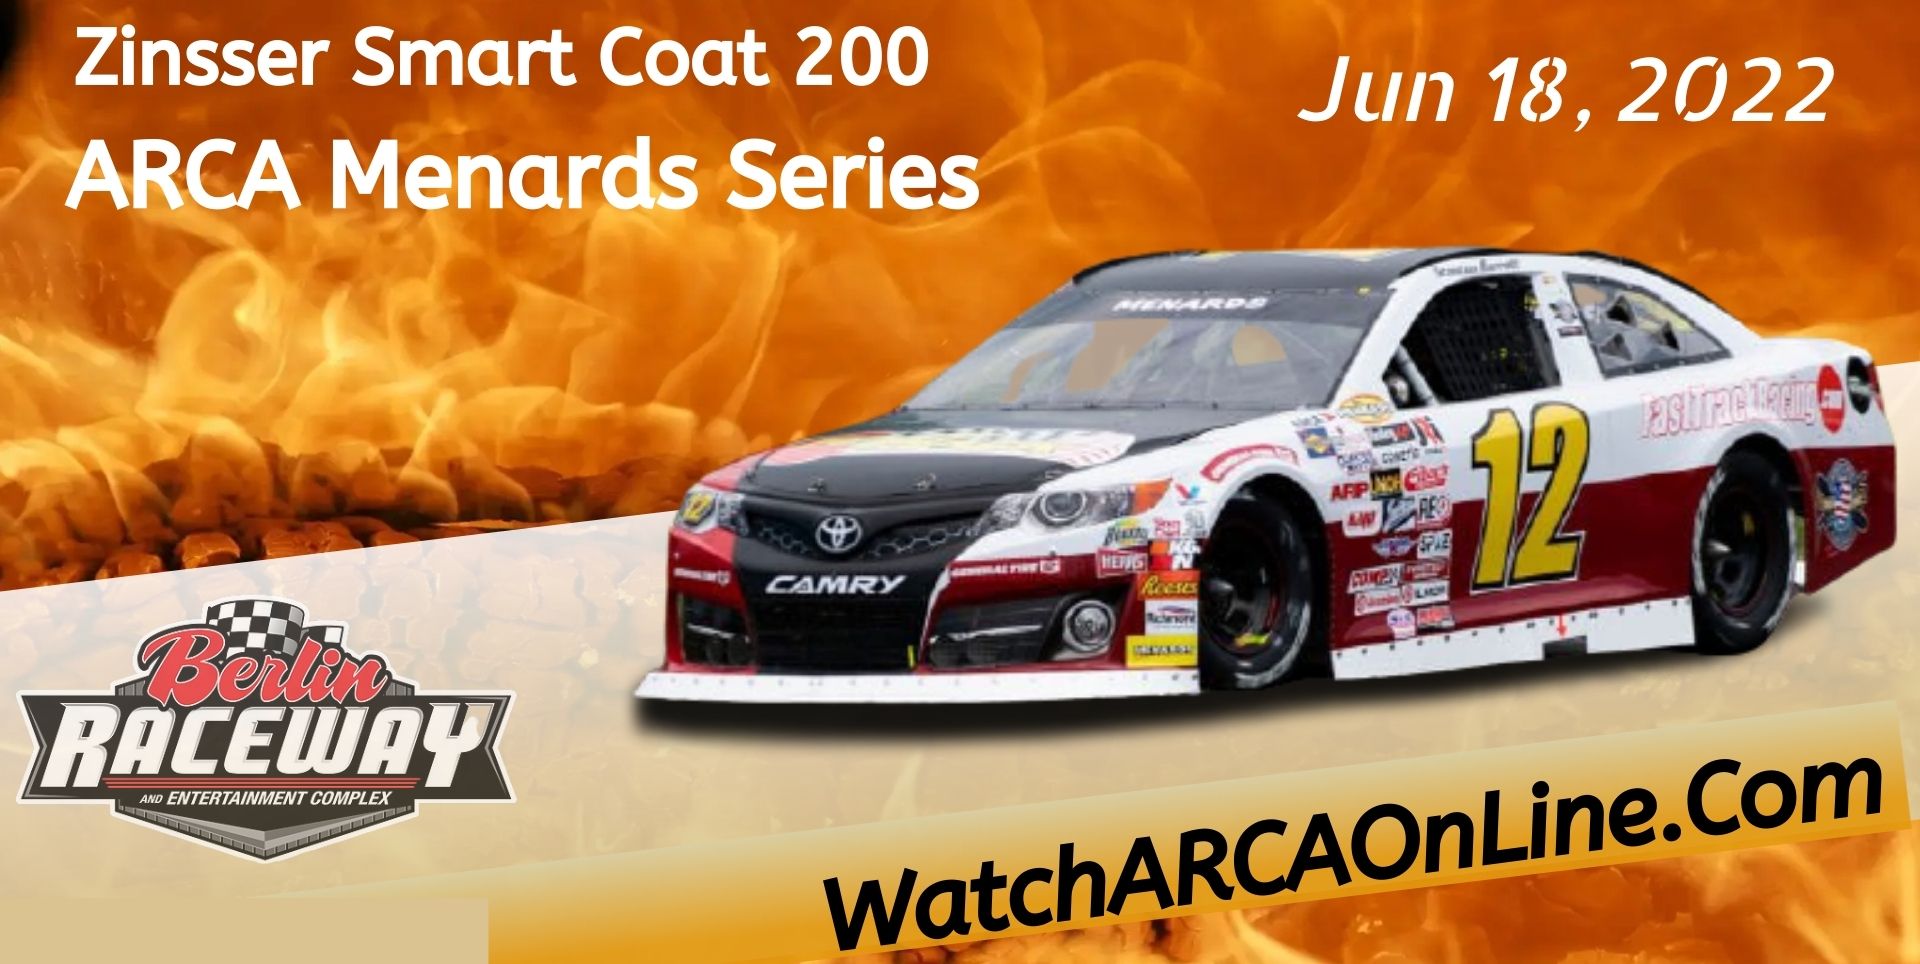 Zinsser SmartCoat 200 ARCA Racing Live Stream